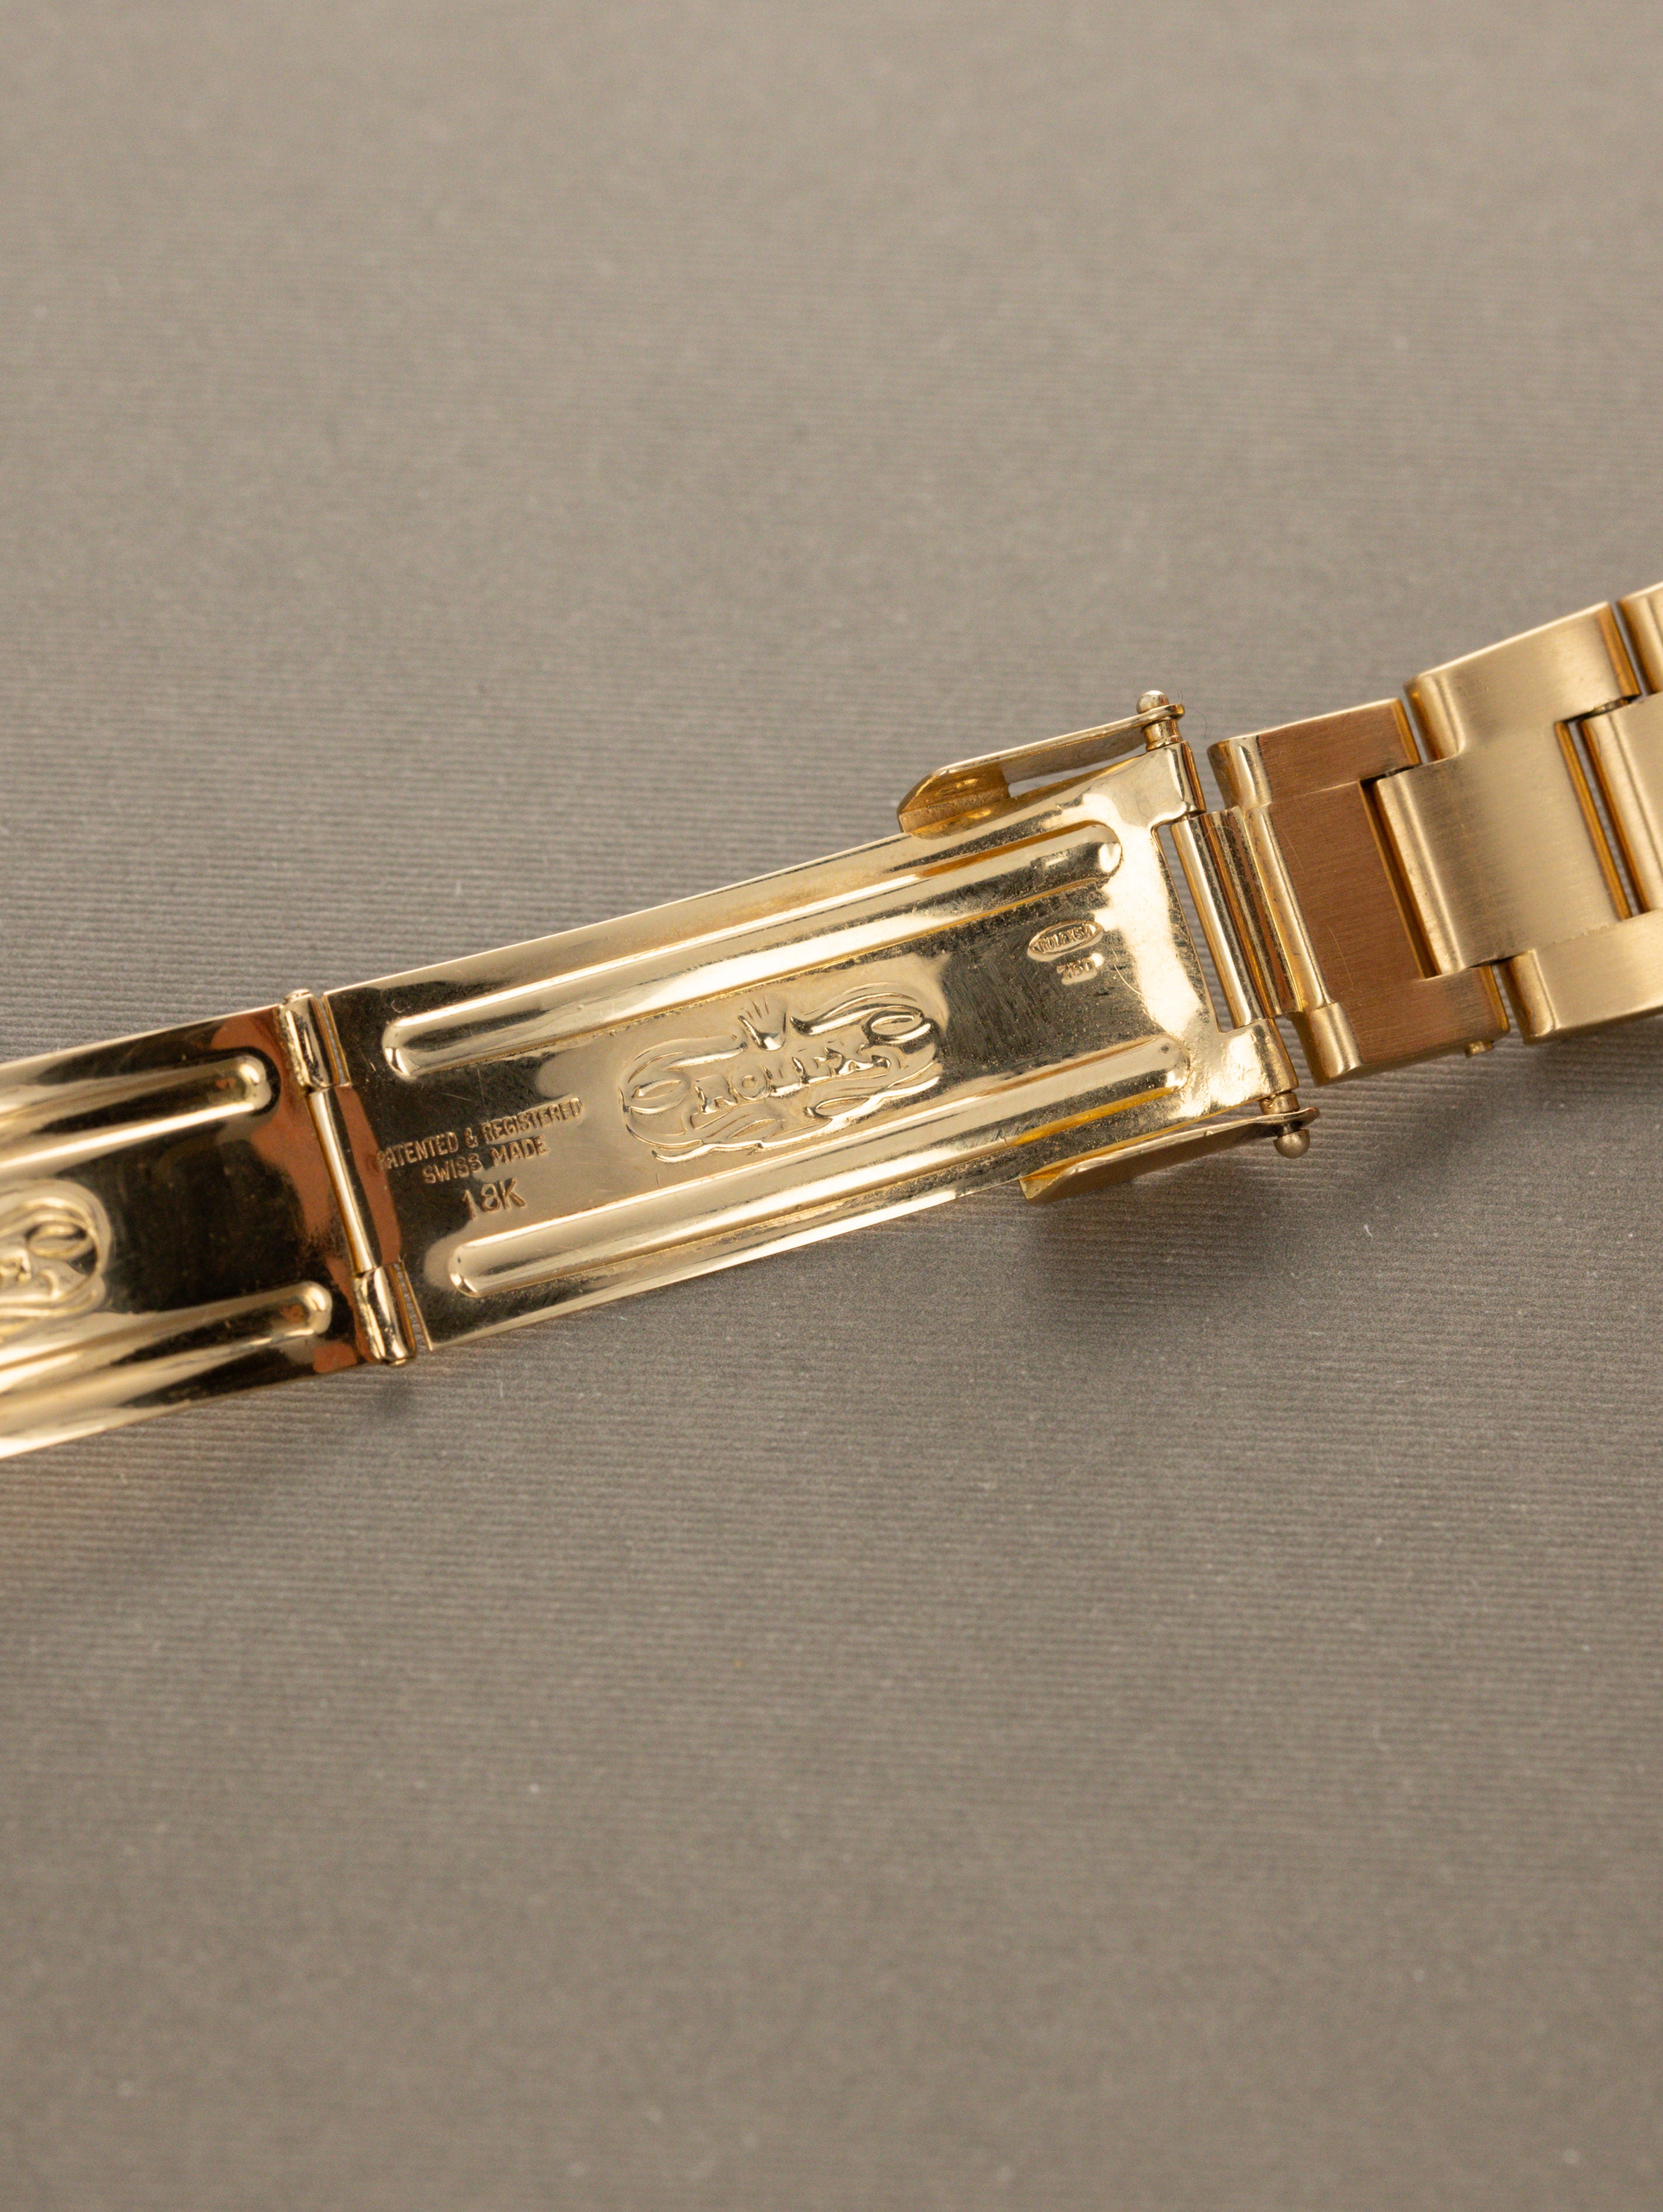 Rolex Submariner Date Ref. 1680/8 - 'Nipple' Dial